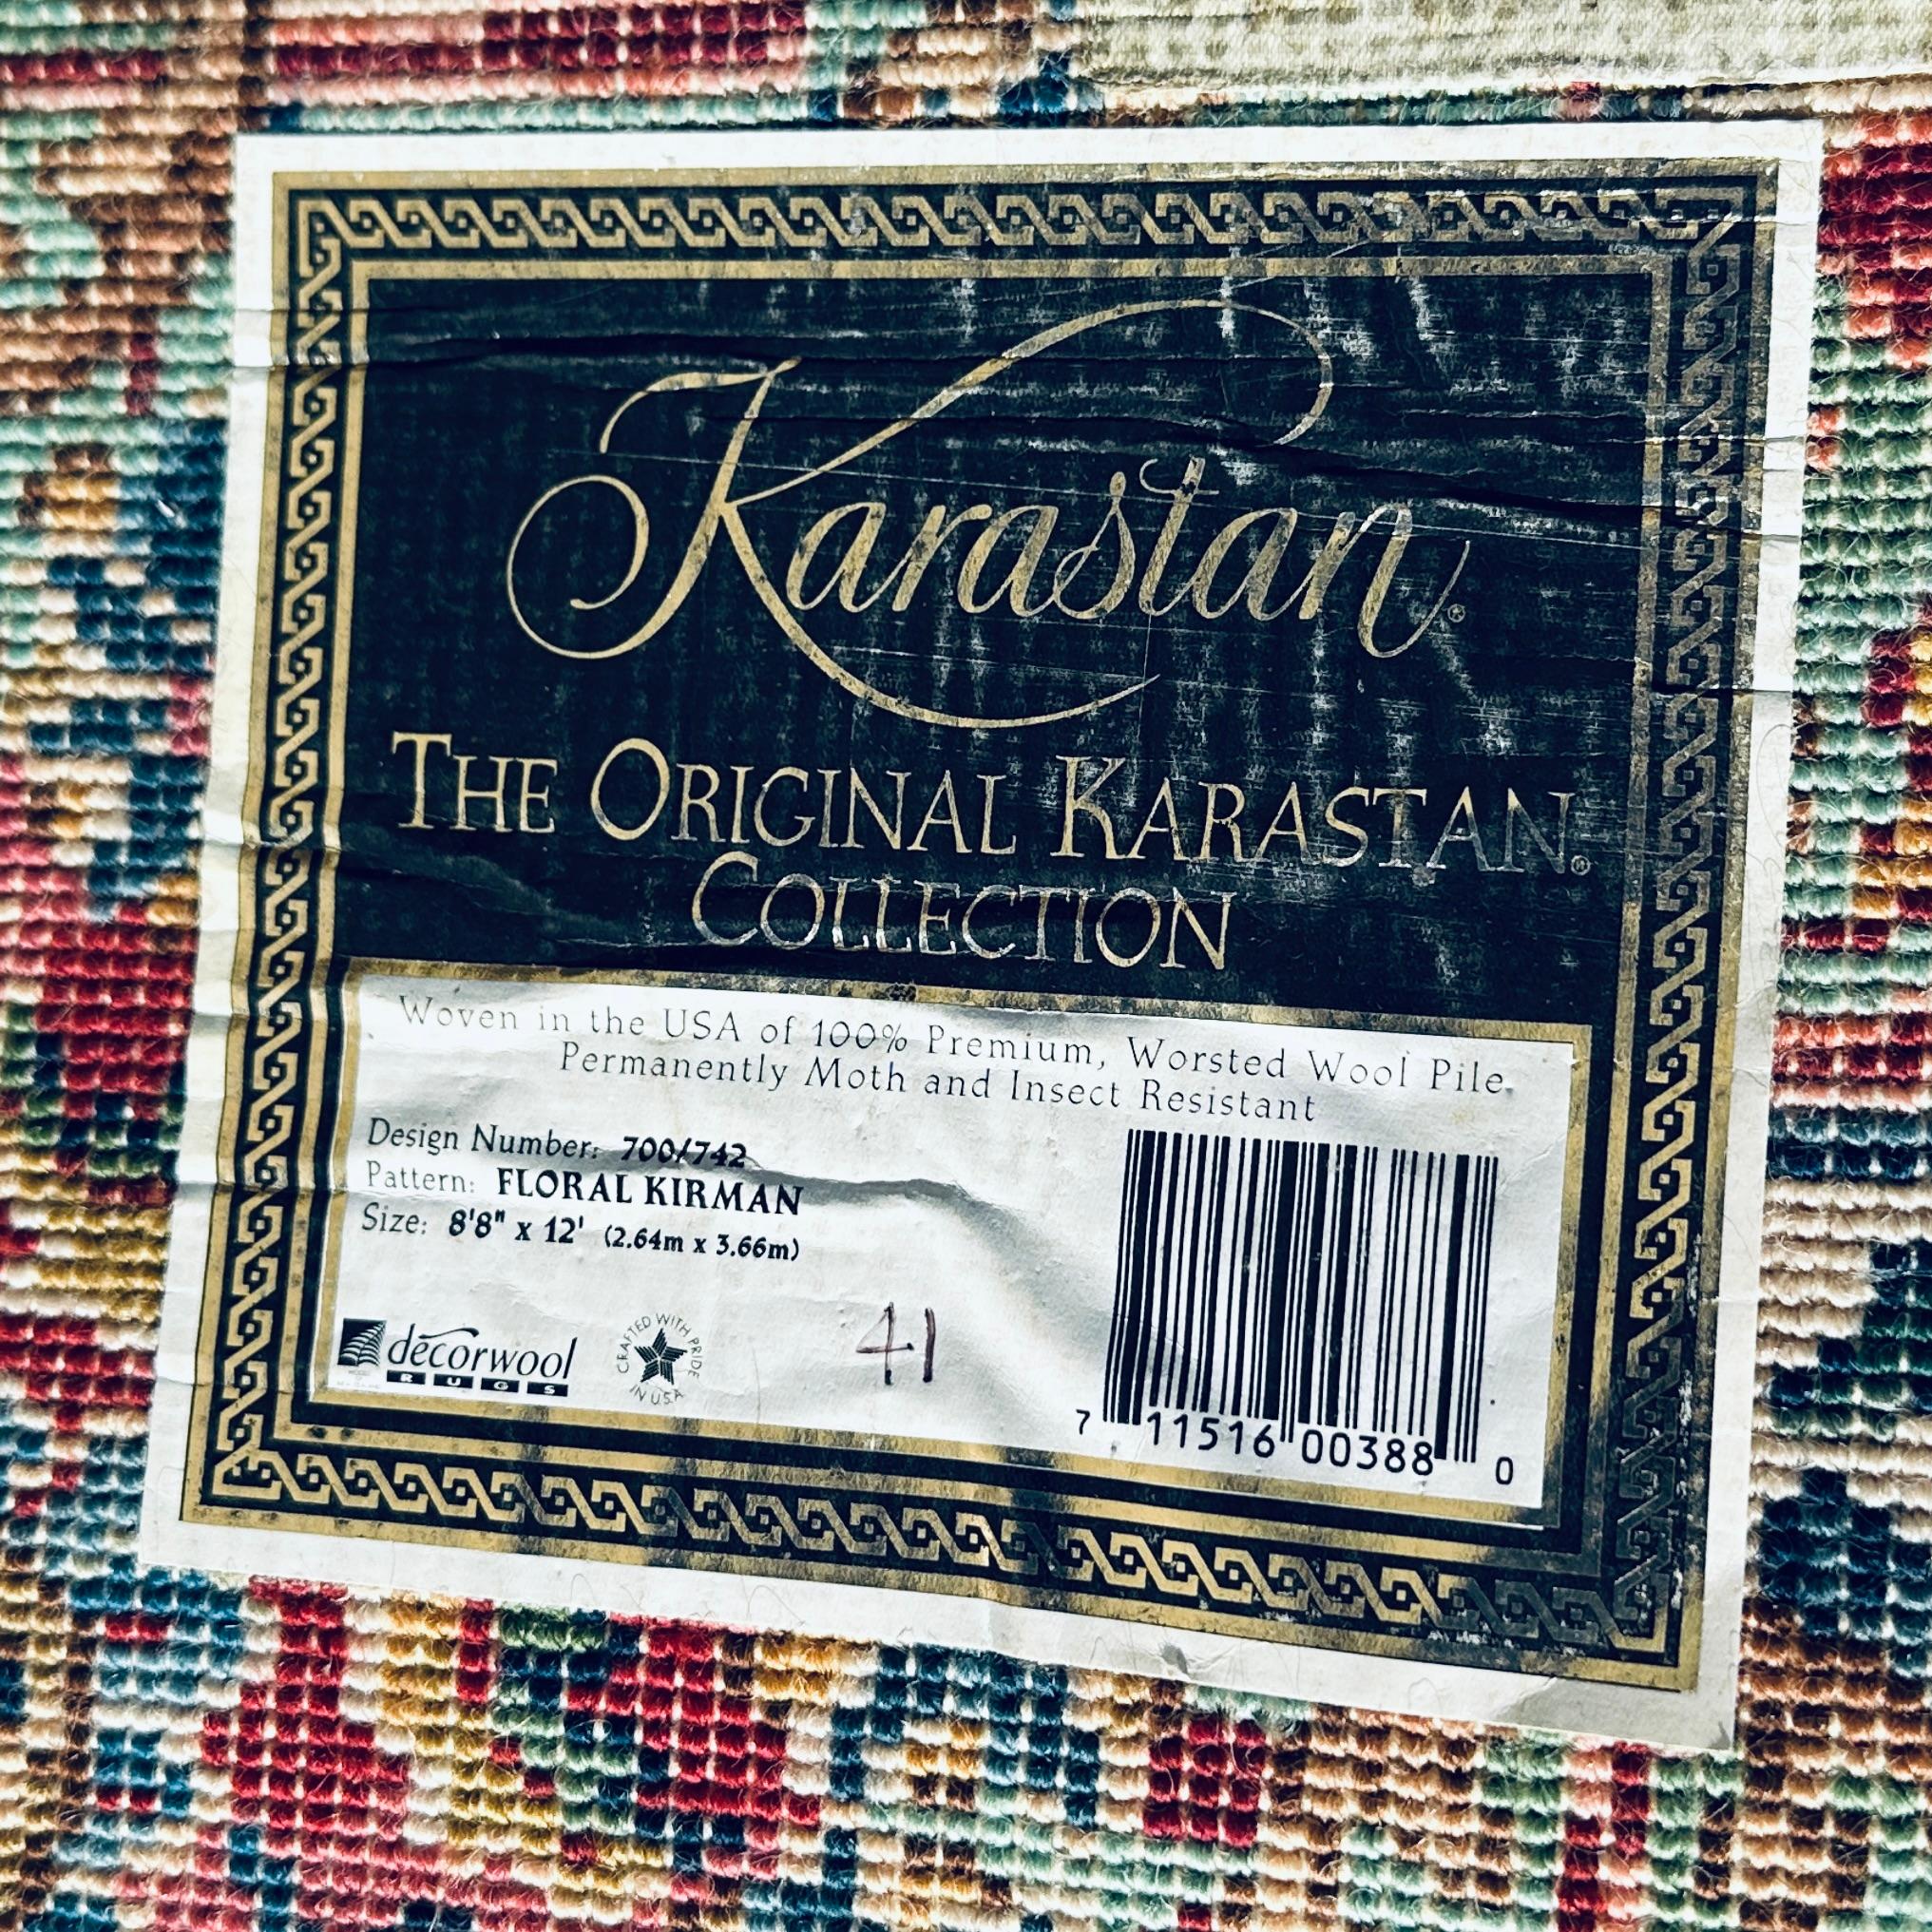 Karastan Floral Kirman 700/742 Premium Worsted Wool Rug 8'8